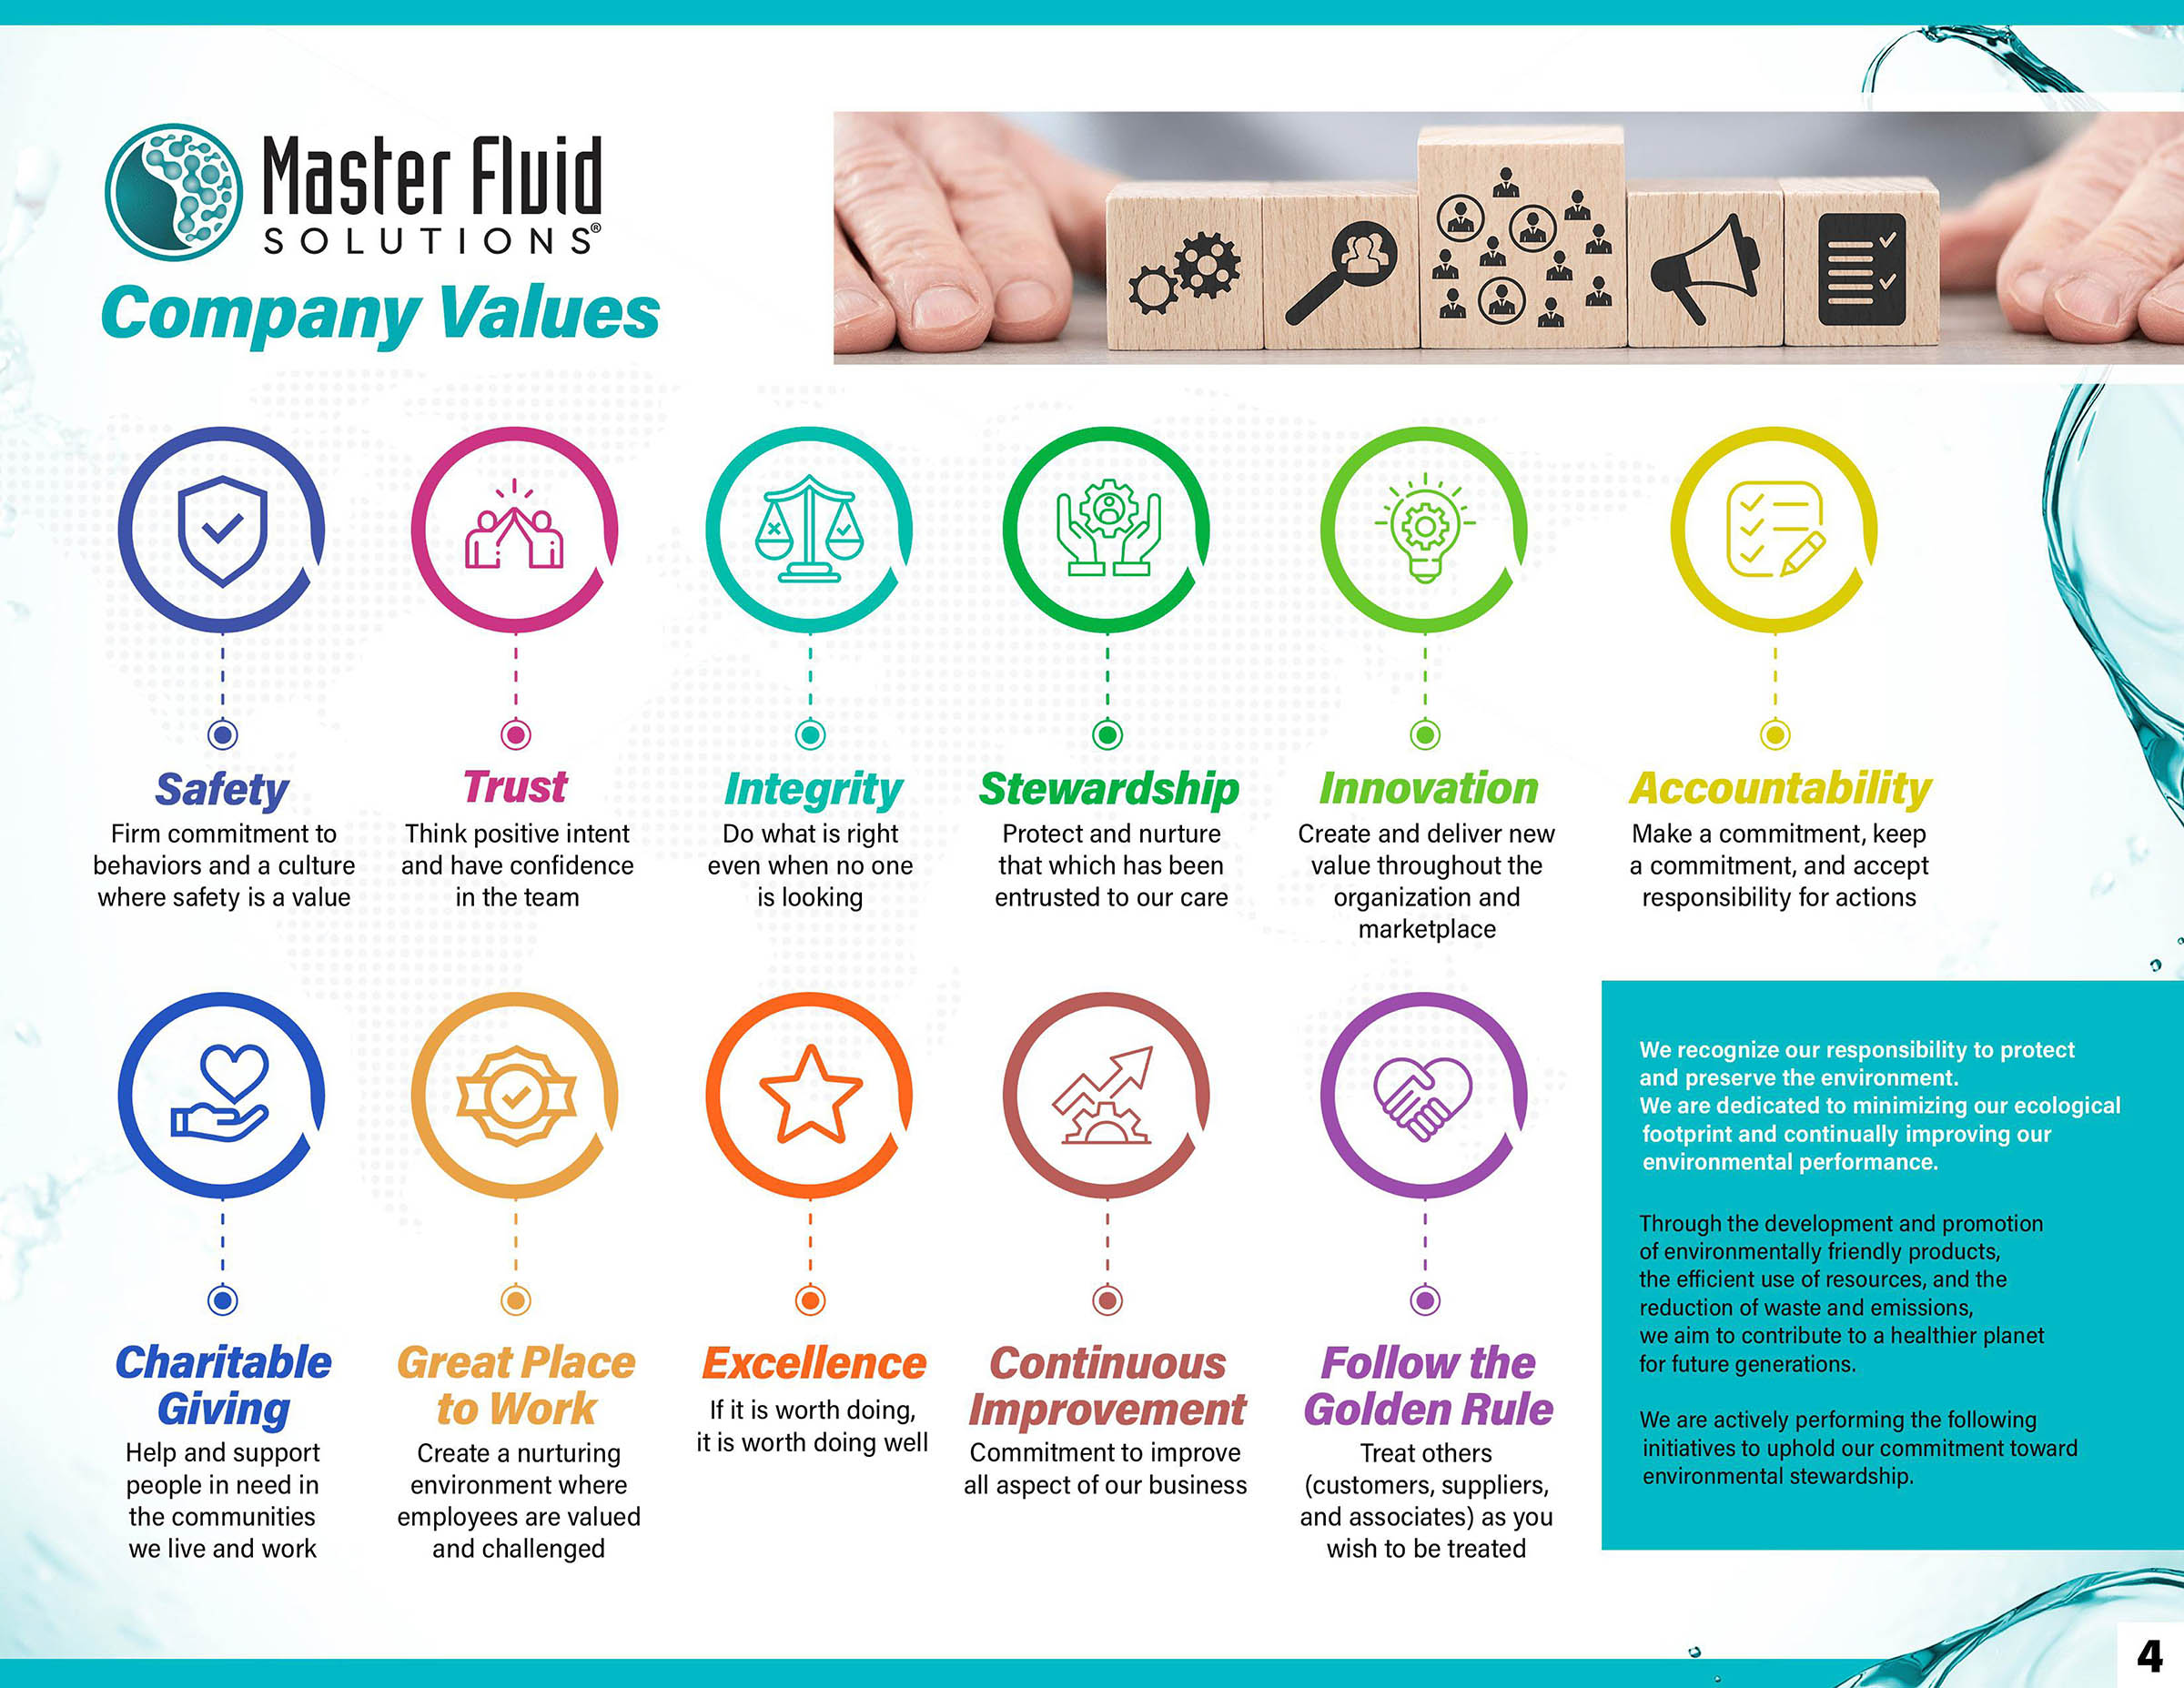 Sustainability Report - Company Values